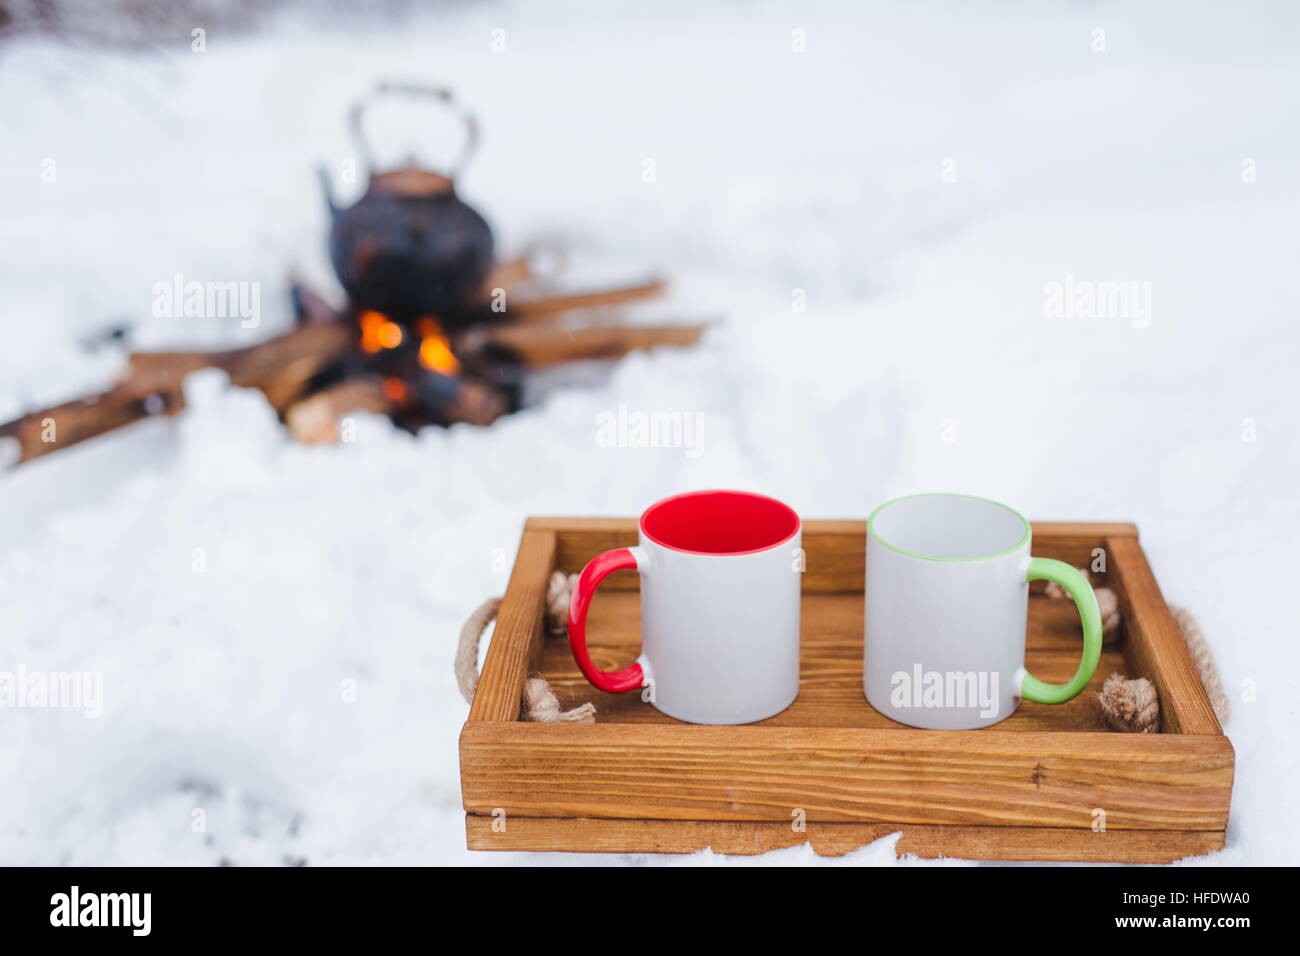 Romantische Winter-Picknick. Zwei Tassen auf einem Holztablett im Schnee. Kupferkessel über dem offenen Feuer auf Hintergrund unscharf. Wasserkocher auf Brennholz. Kopieren Sie sp Stockfoto